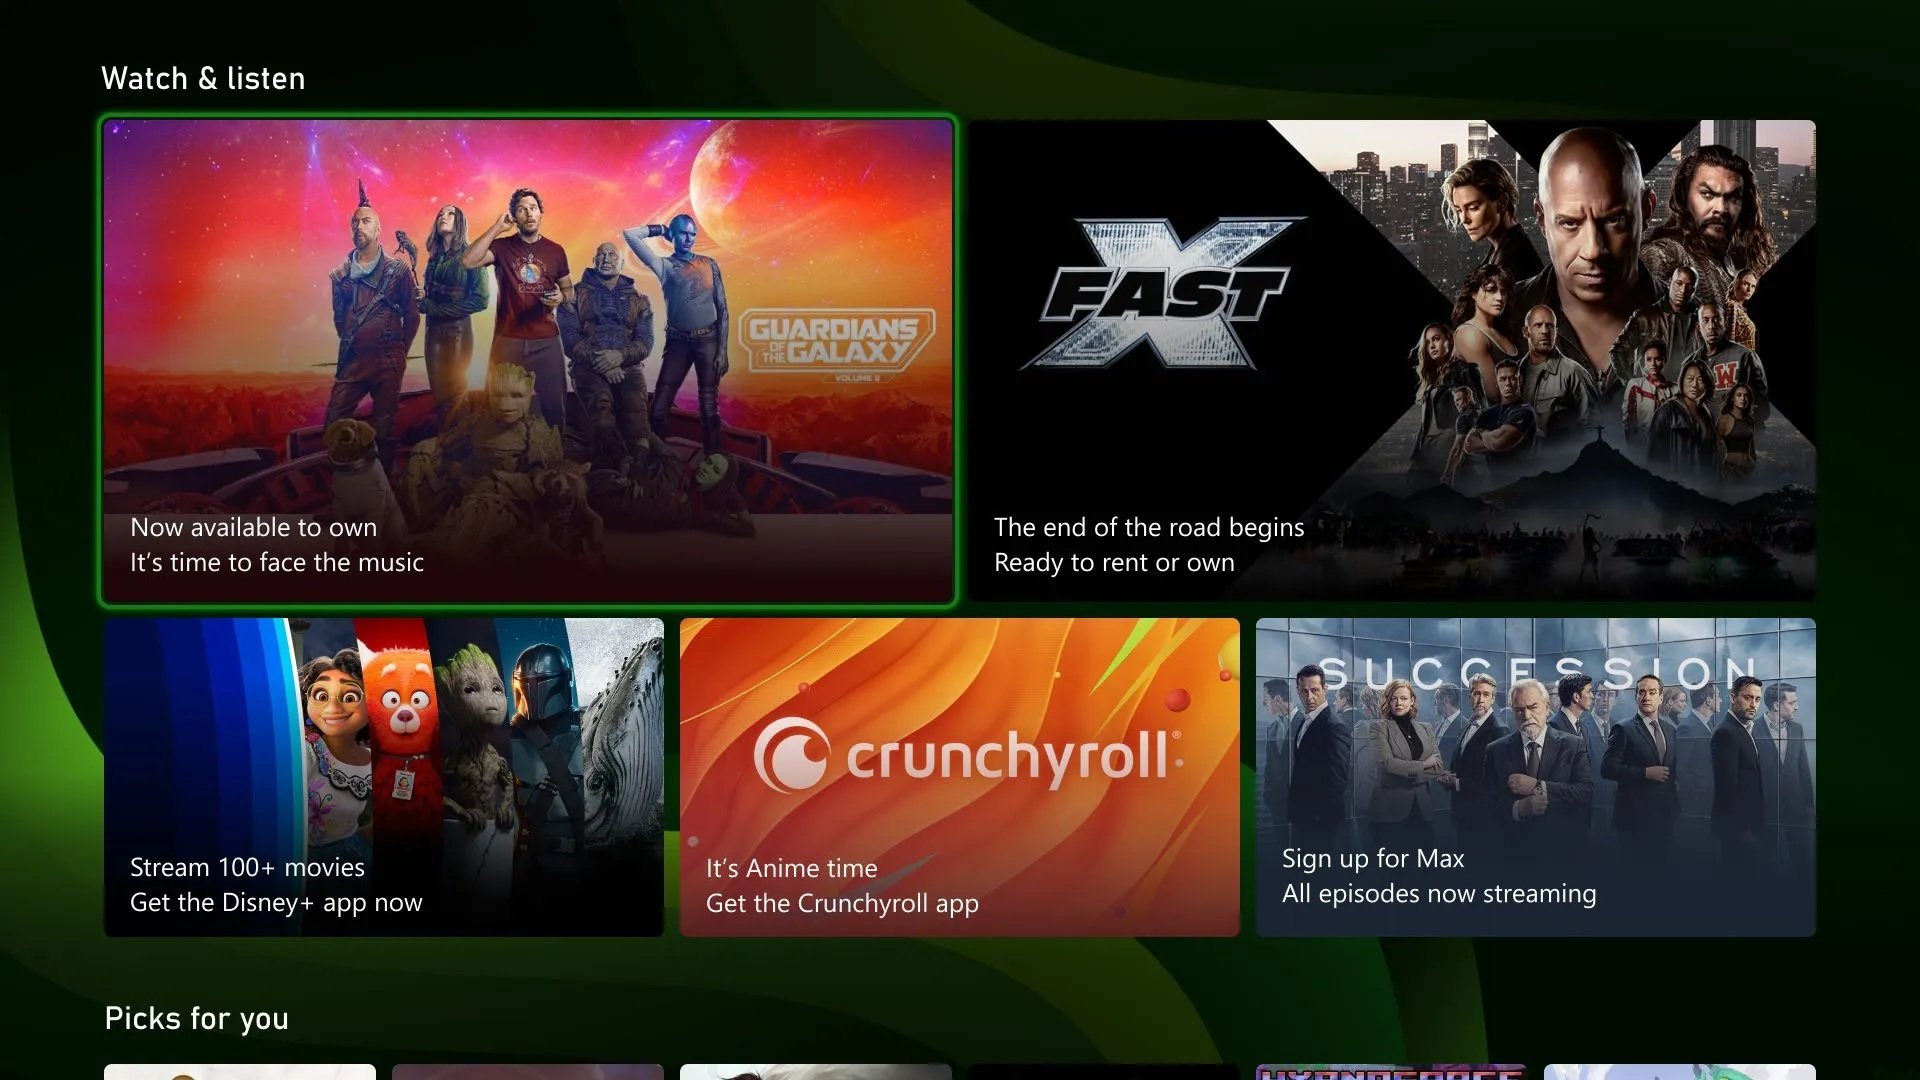 Xbox: nova home dos consoles já está disponível! Veja novidades